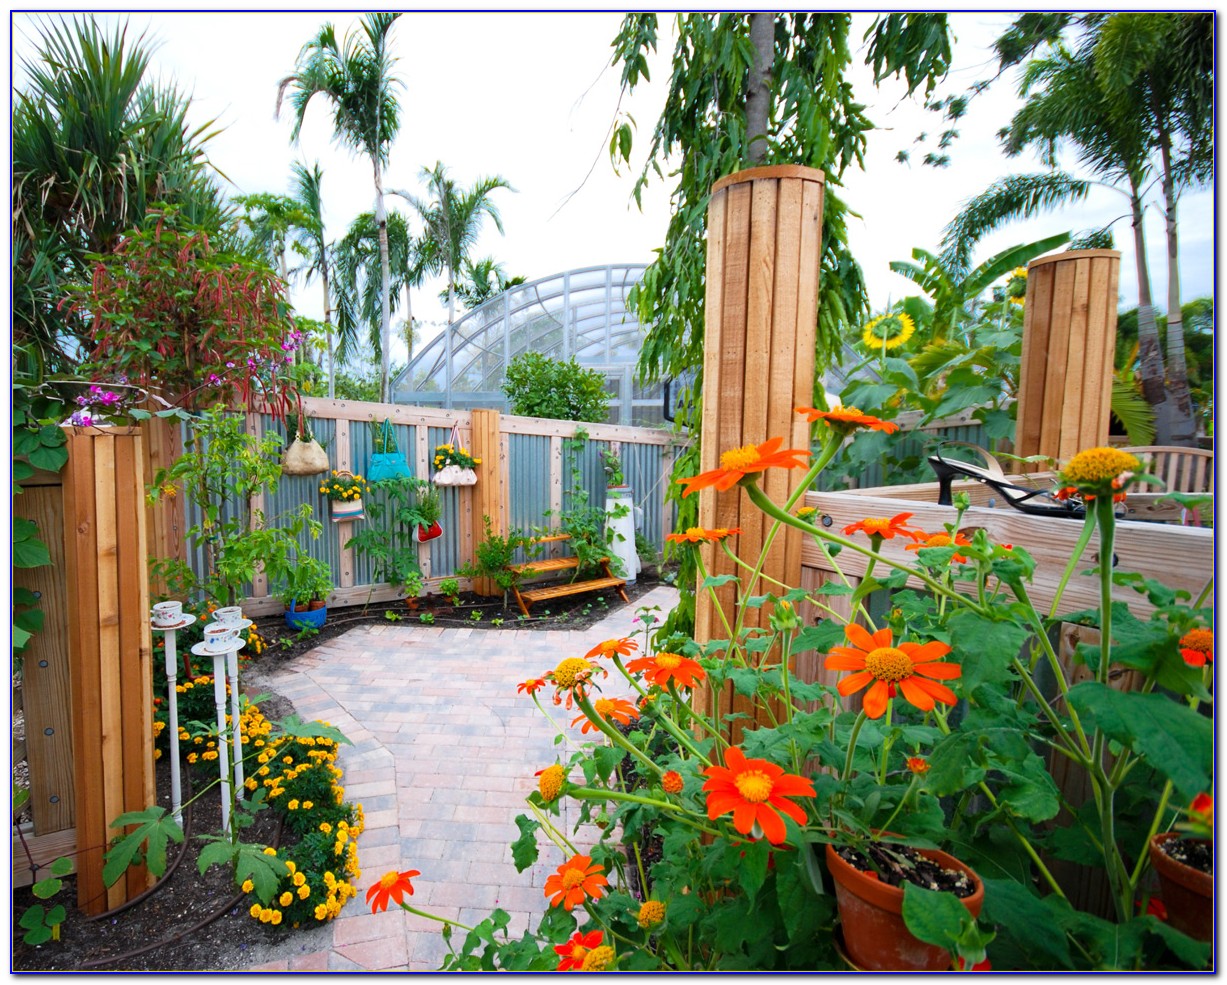 Botanical Gardens Apartments Naples Fl - Garden : Home Design Ideas #